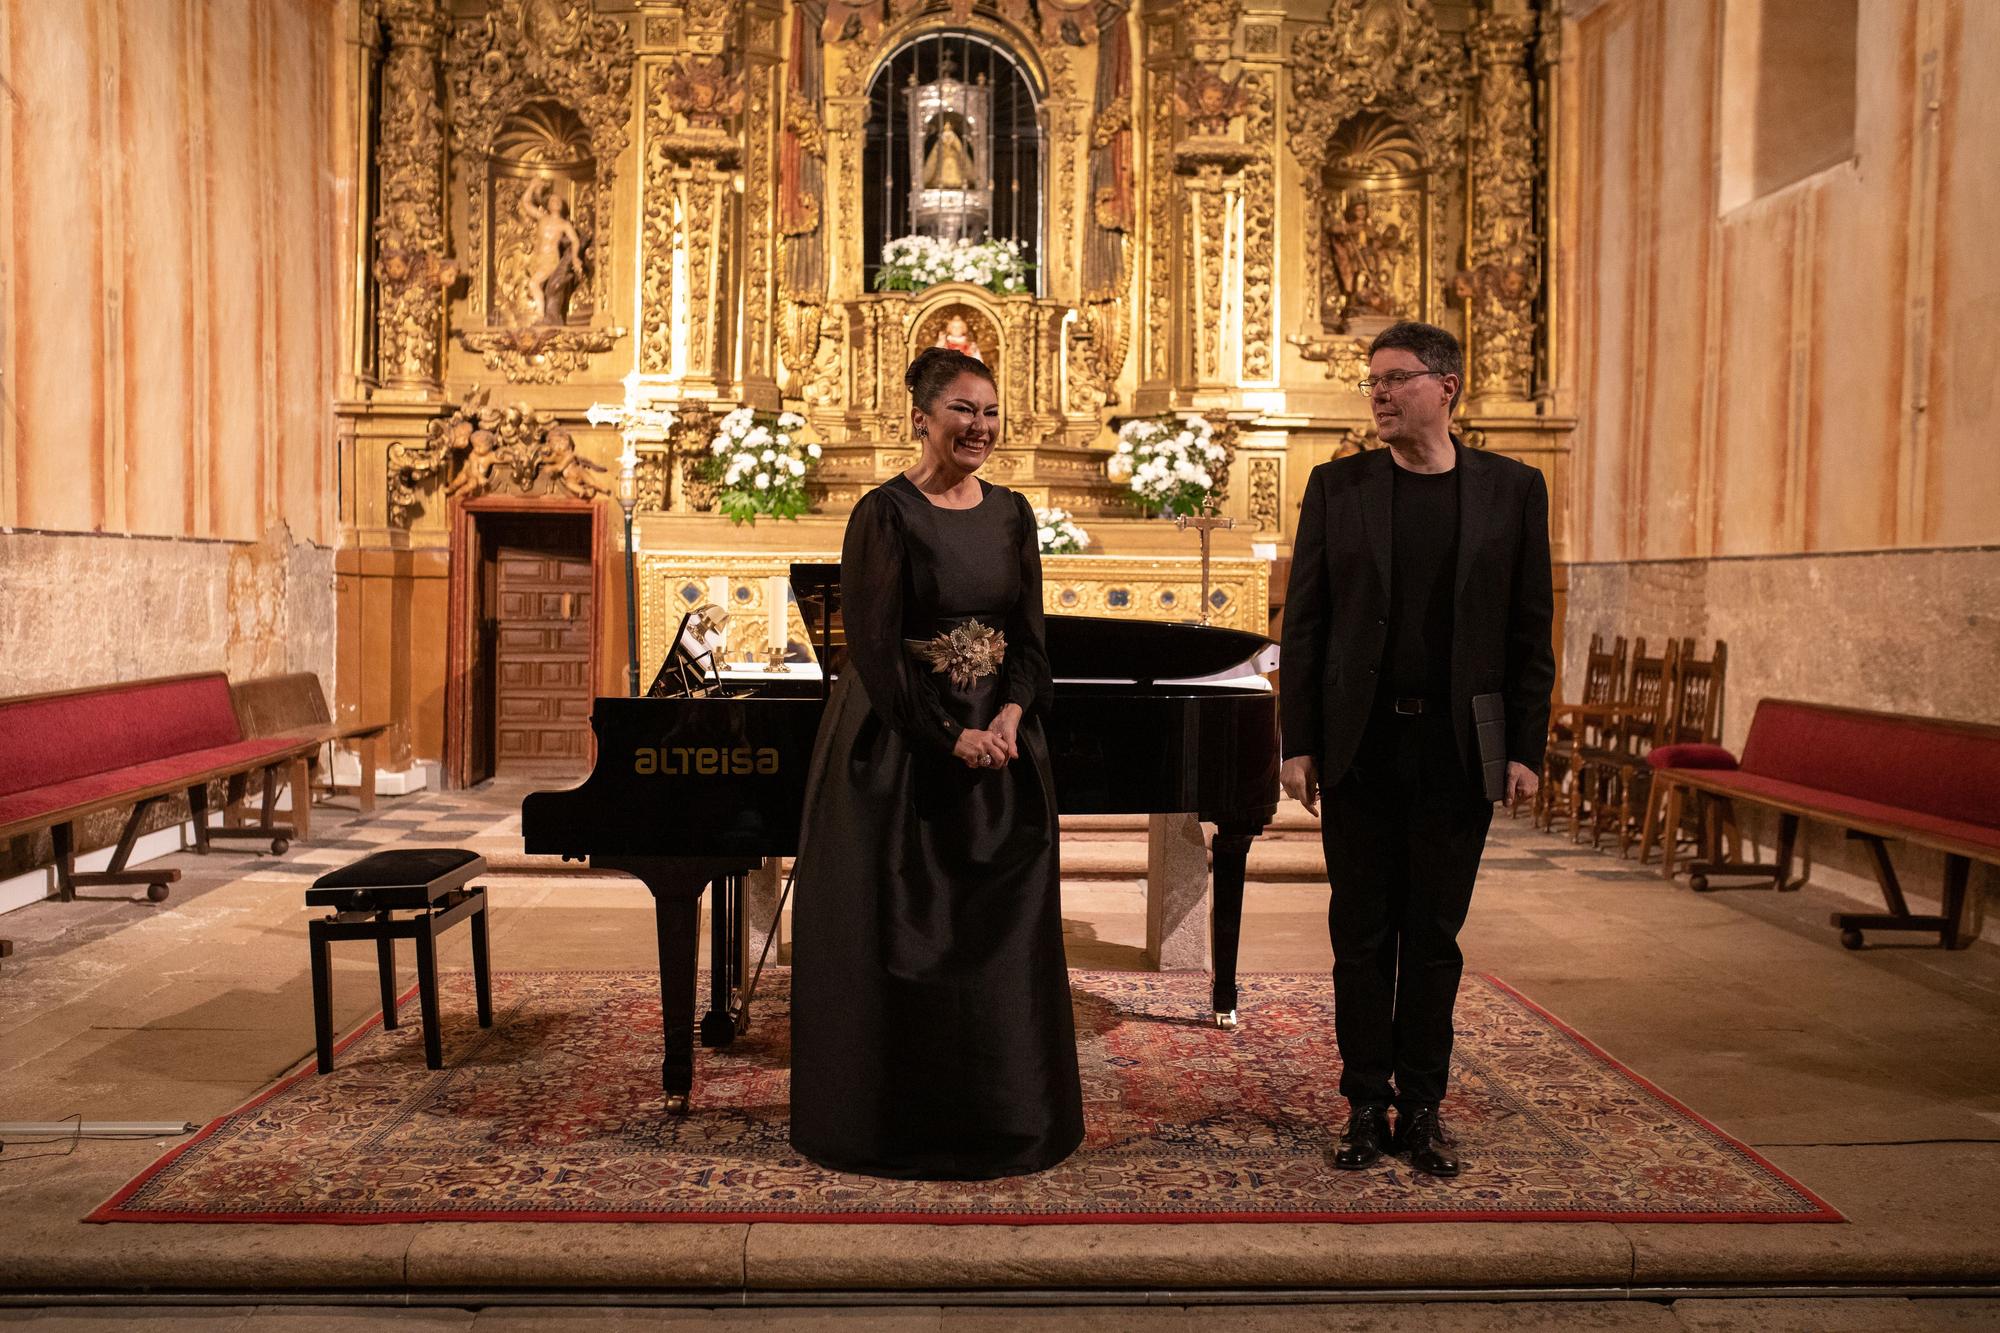 GALERÍA | Así brilla la iglesia de La Hiniesta brilla: concierto e iluminación, en imágenes